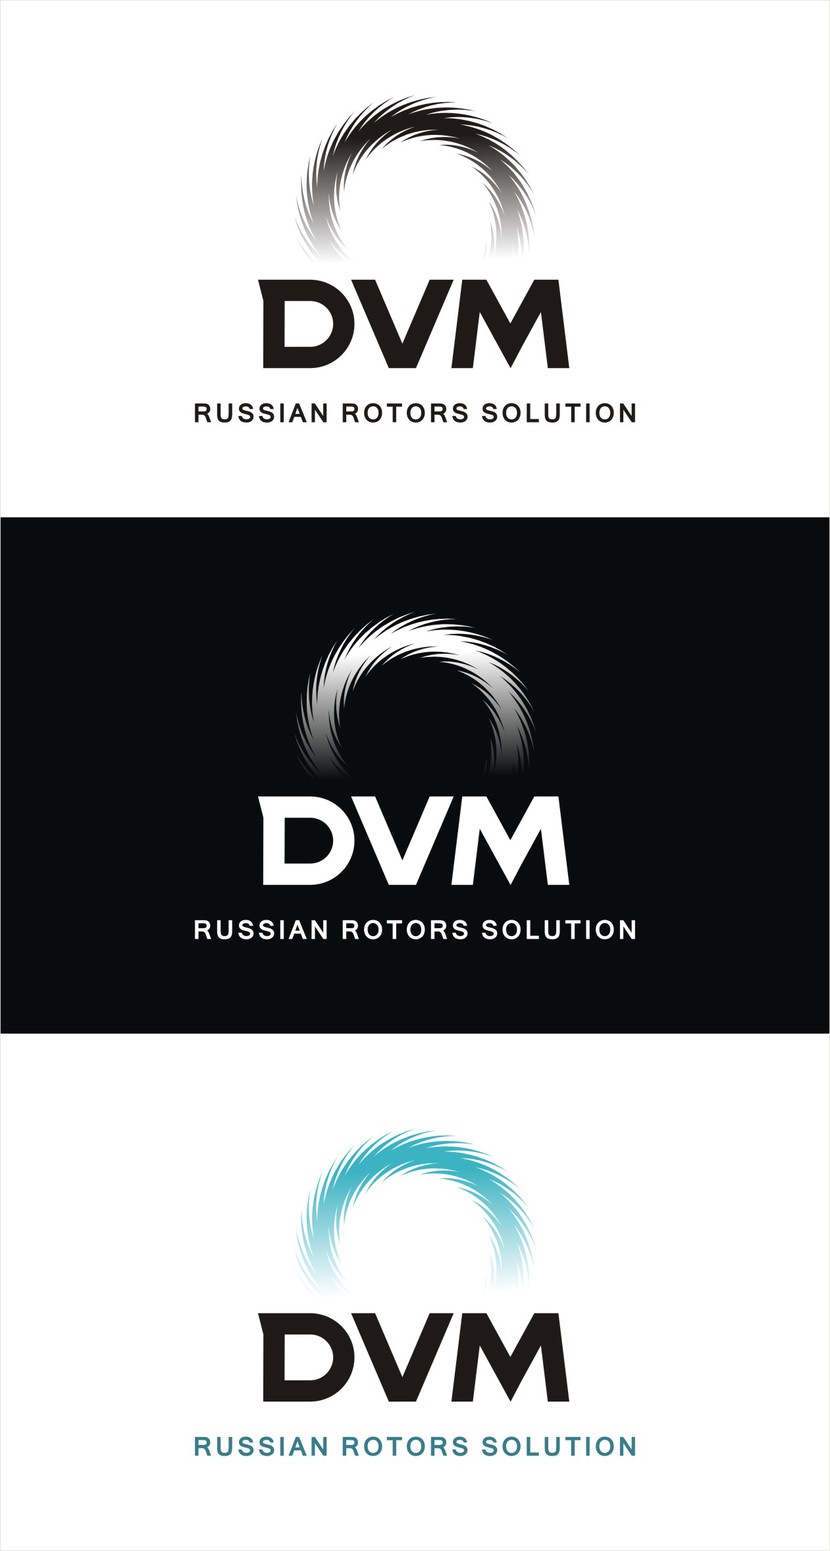 Вариант 4
Лого: Шрифт авторский, жирное начертание
Знак: Условно-стилизованное изображение ротора - Создание логотипа DVM Russian rotors solution